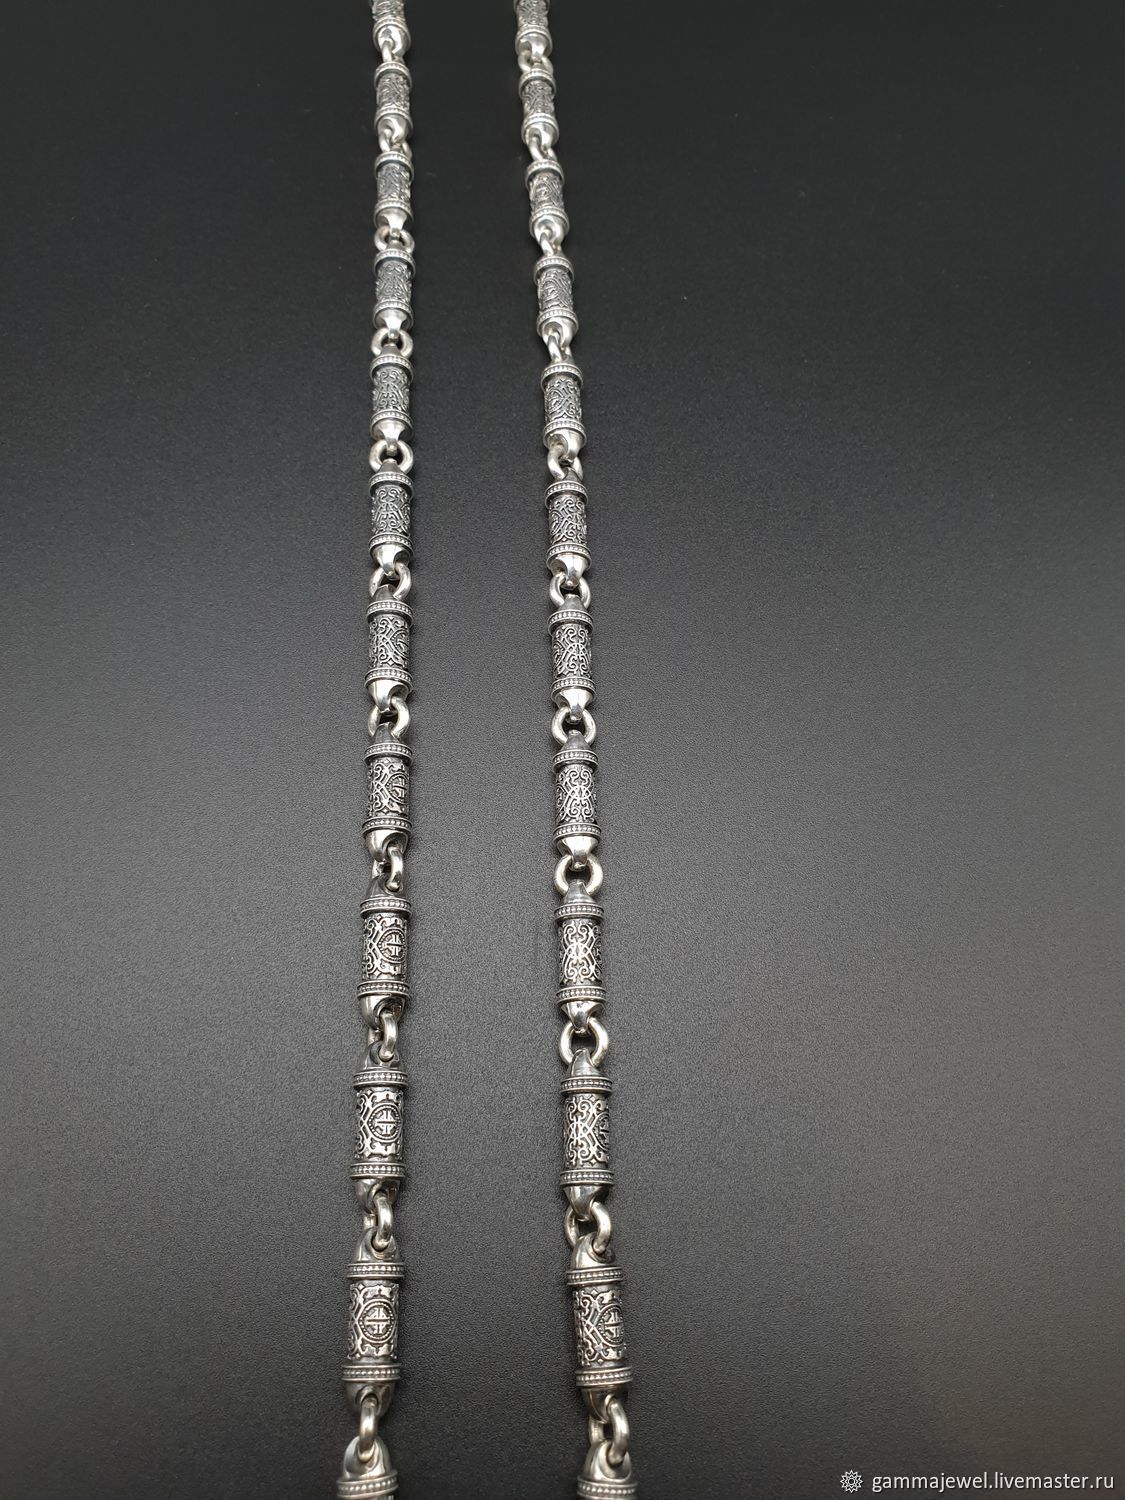 Крупная мужская литьевая цепь, с оригинальным орнаментом 80 грамм